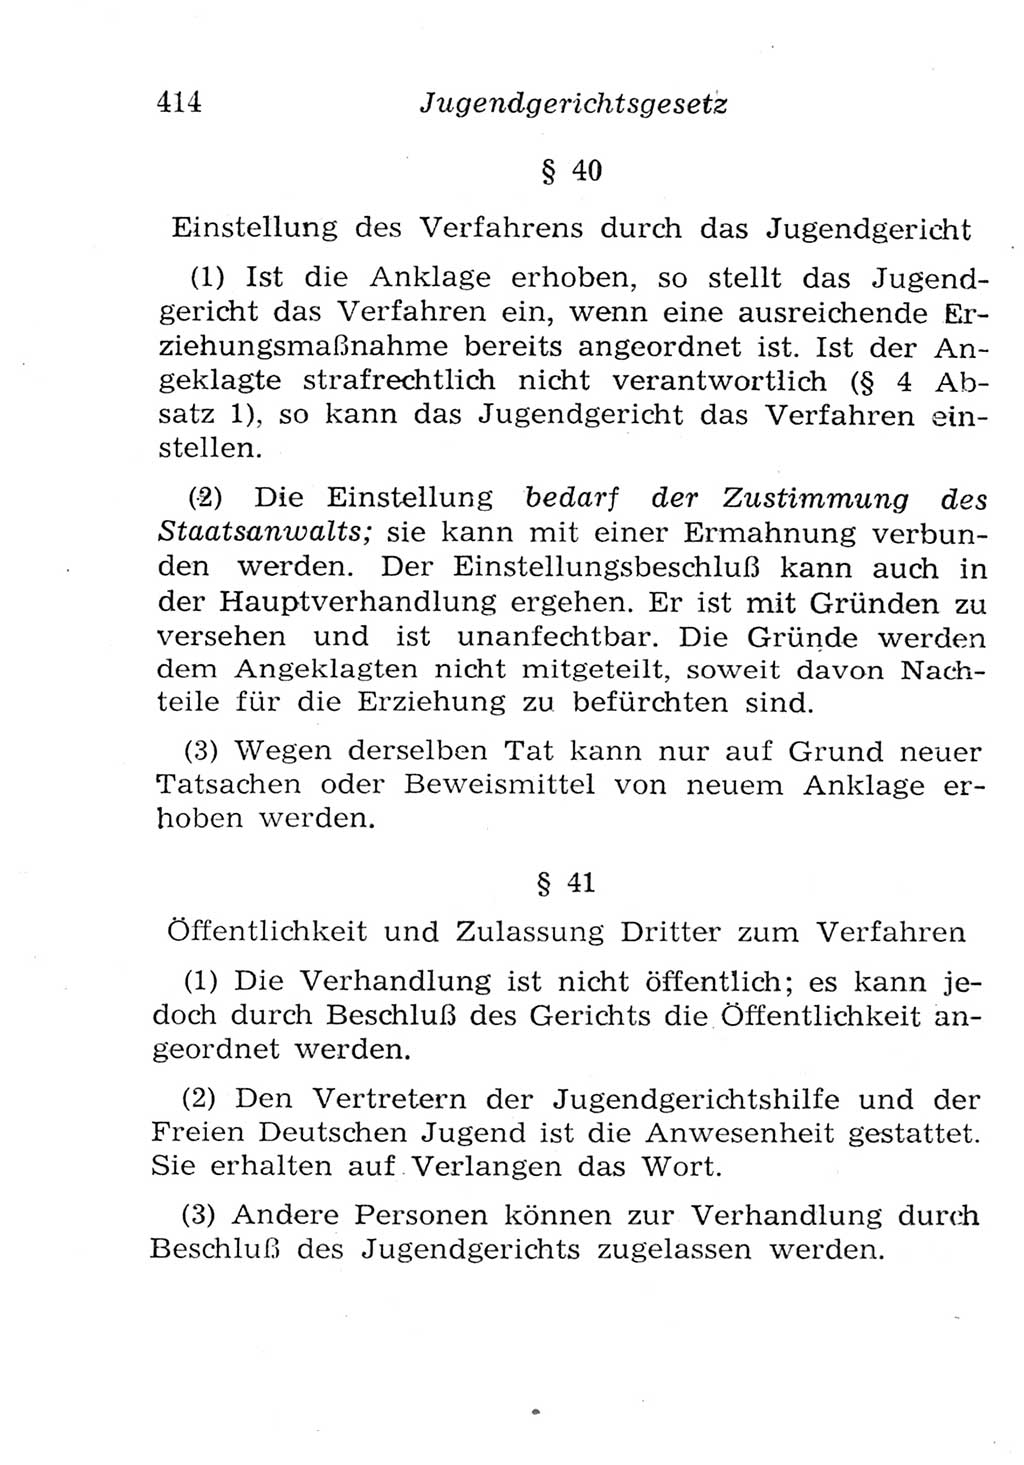 Strafgesetzbuch (StGB) und andere Strafgesetze [Deutsche Demokratische Republik (DDR)] 1957, Seite 414 (StGB Strafges. DDR 1957, S. 414)